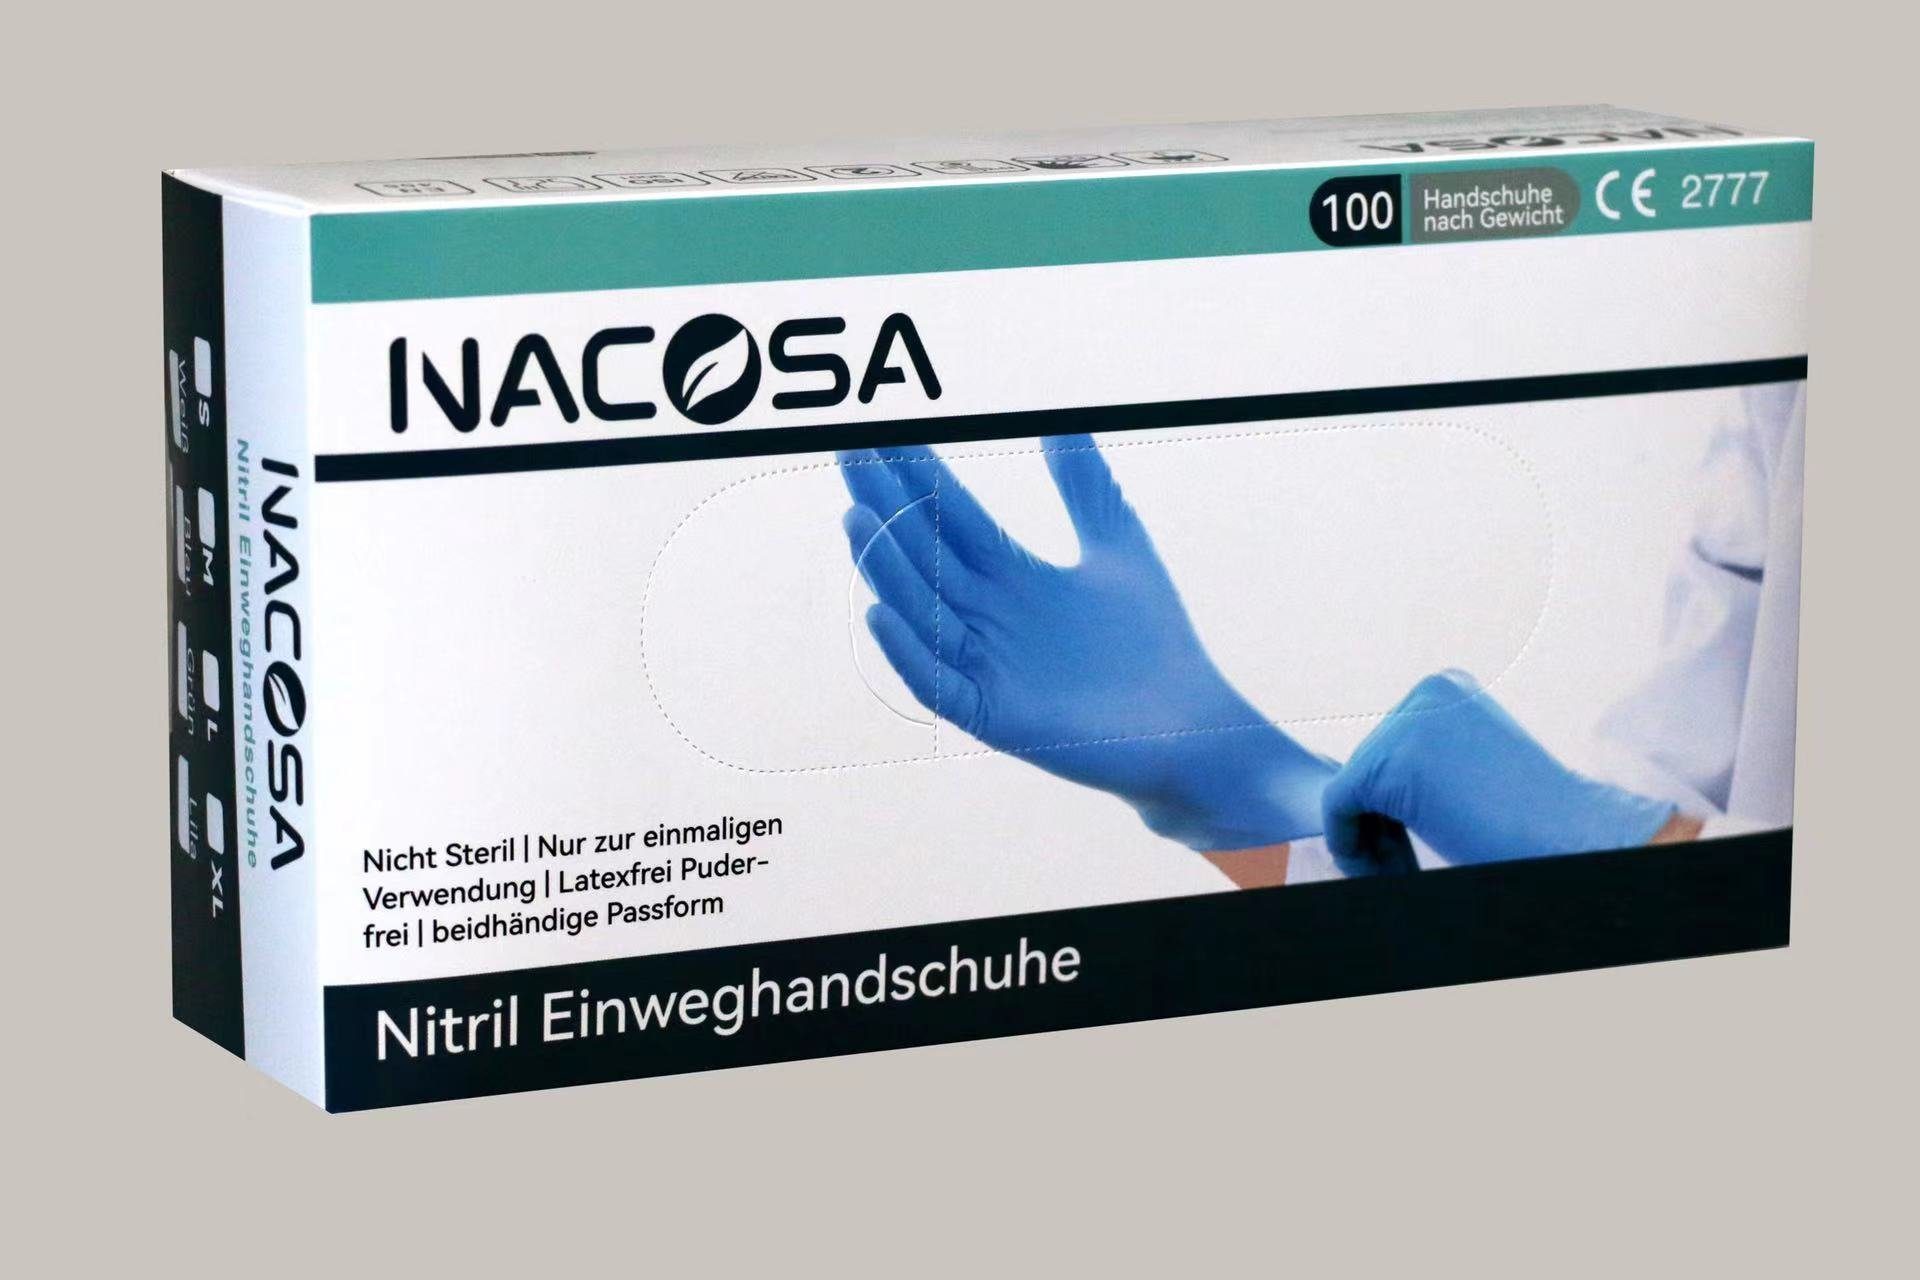 Nacosa